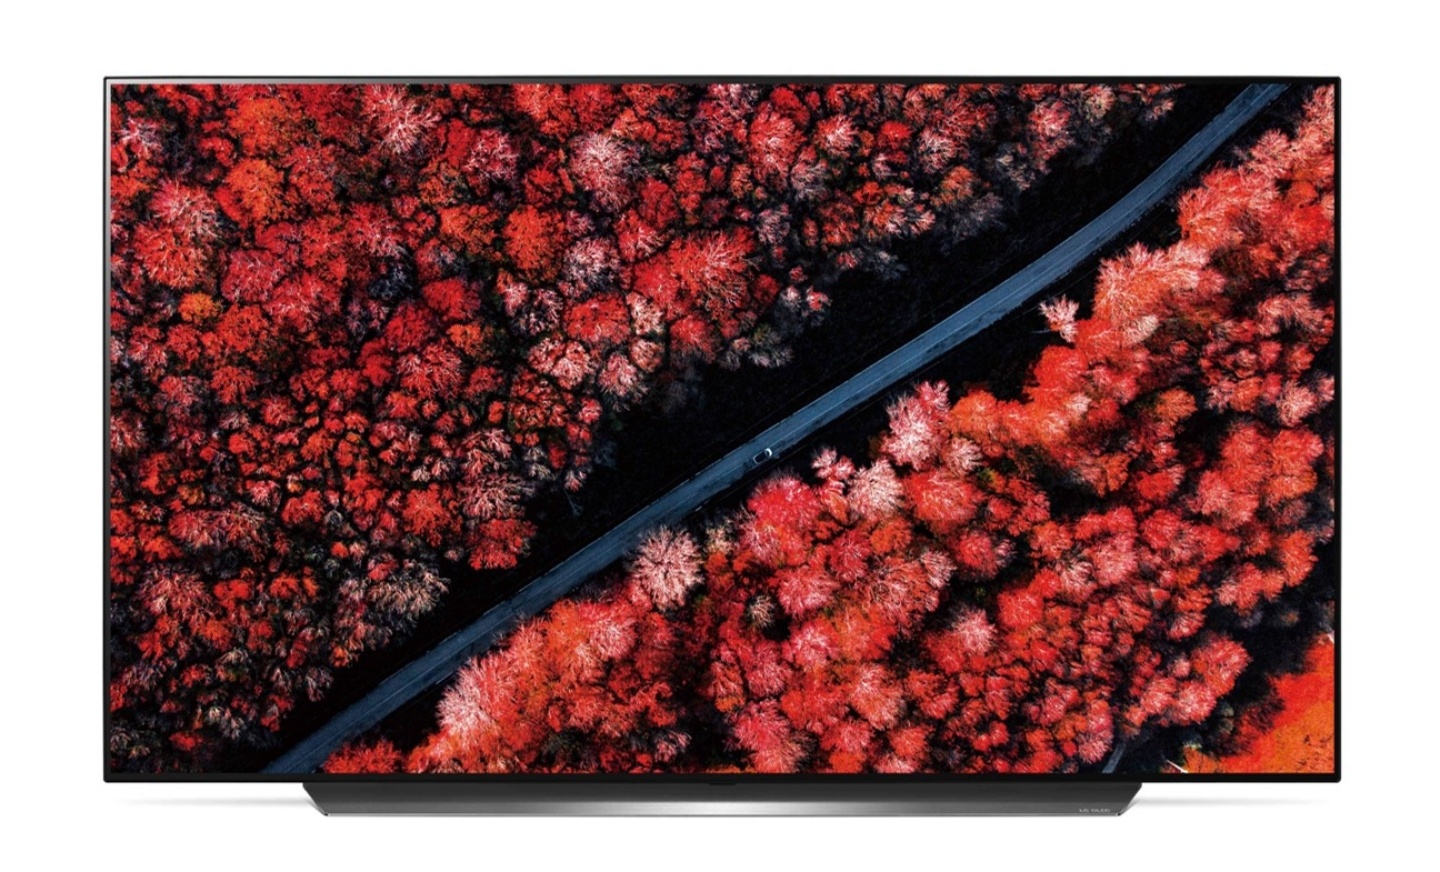 LG推出全新大尺寸、高畫質的OLED TV！搭載三大AI科技 還能輕鬆操控聯網家電